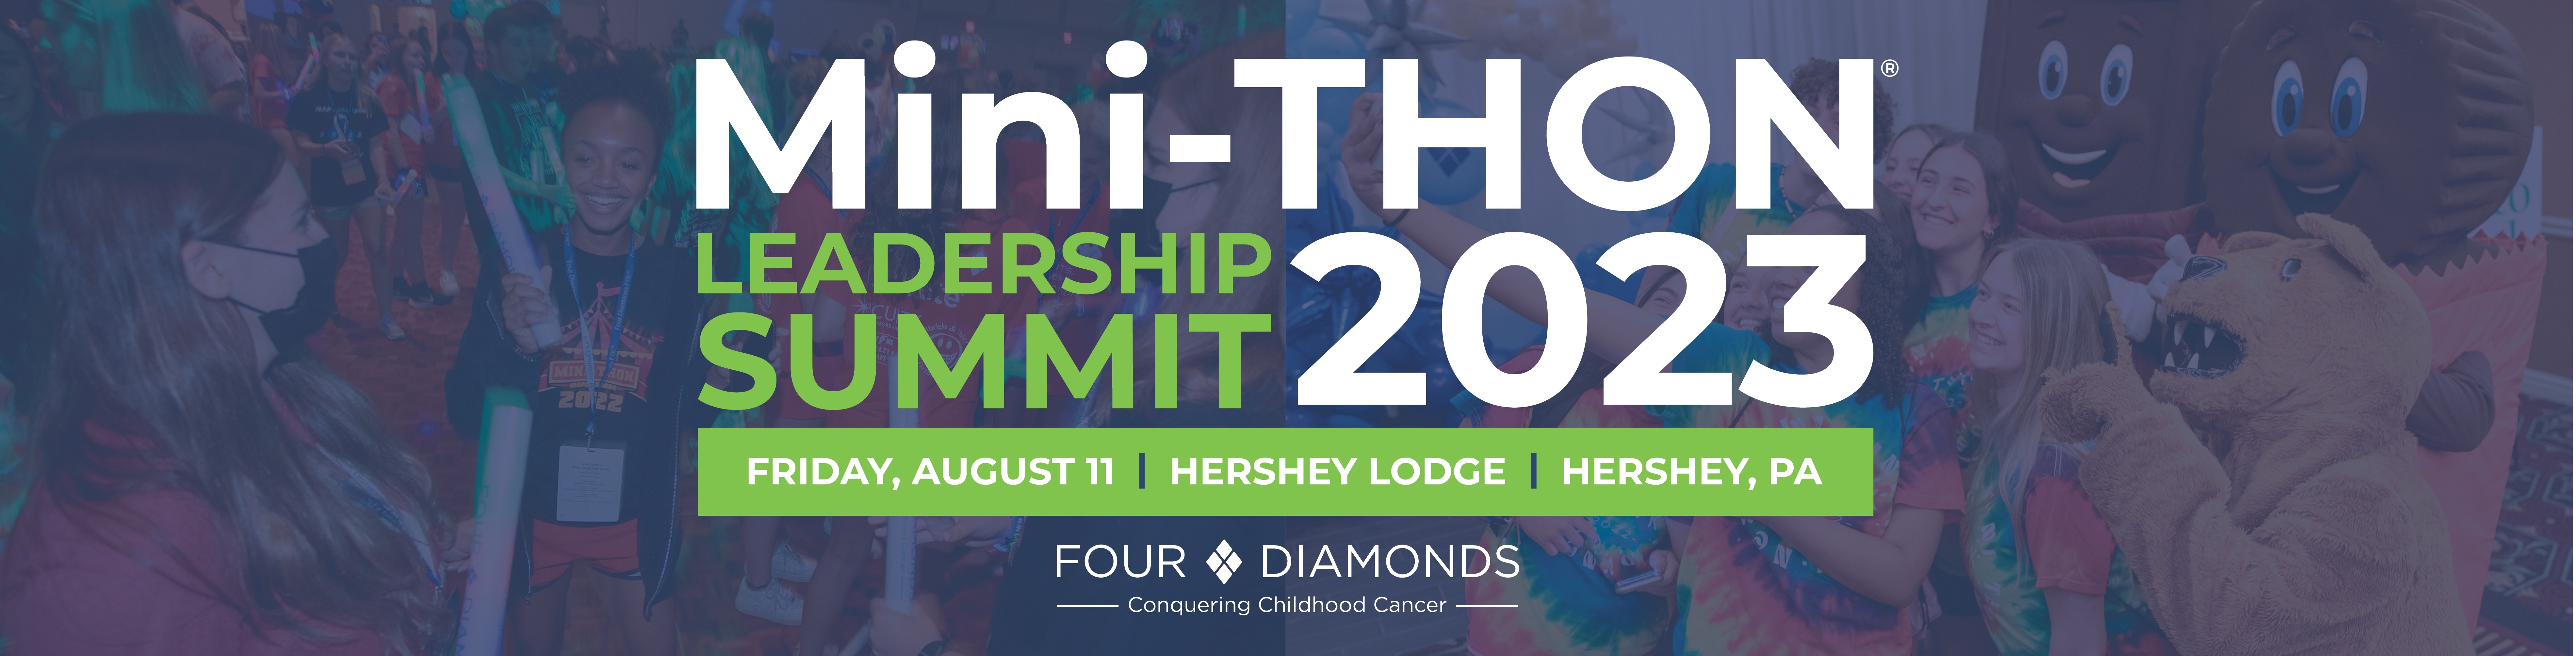 Mini-THON Leadership Summit